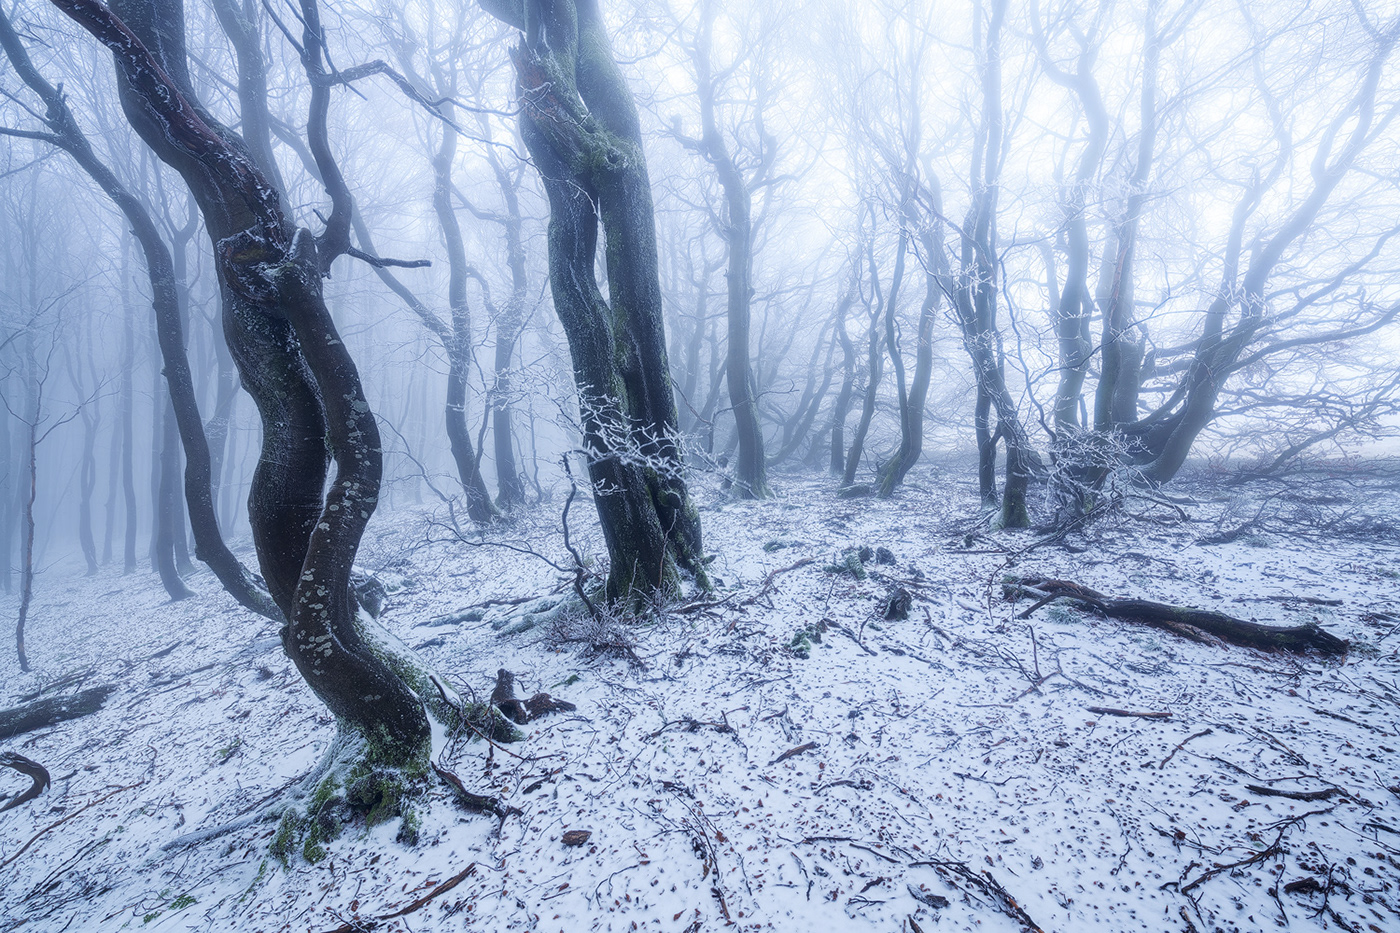 Beech coldness enchanted fangorn fog forest frozen secret trees wood